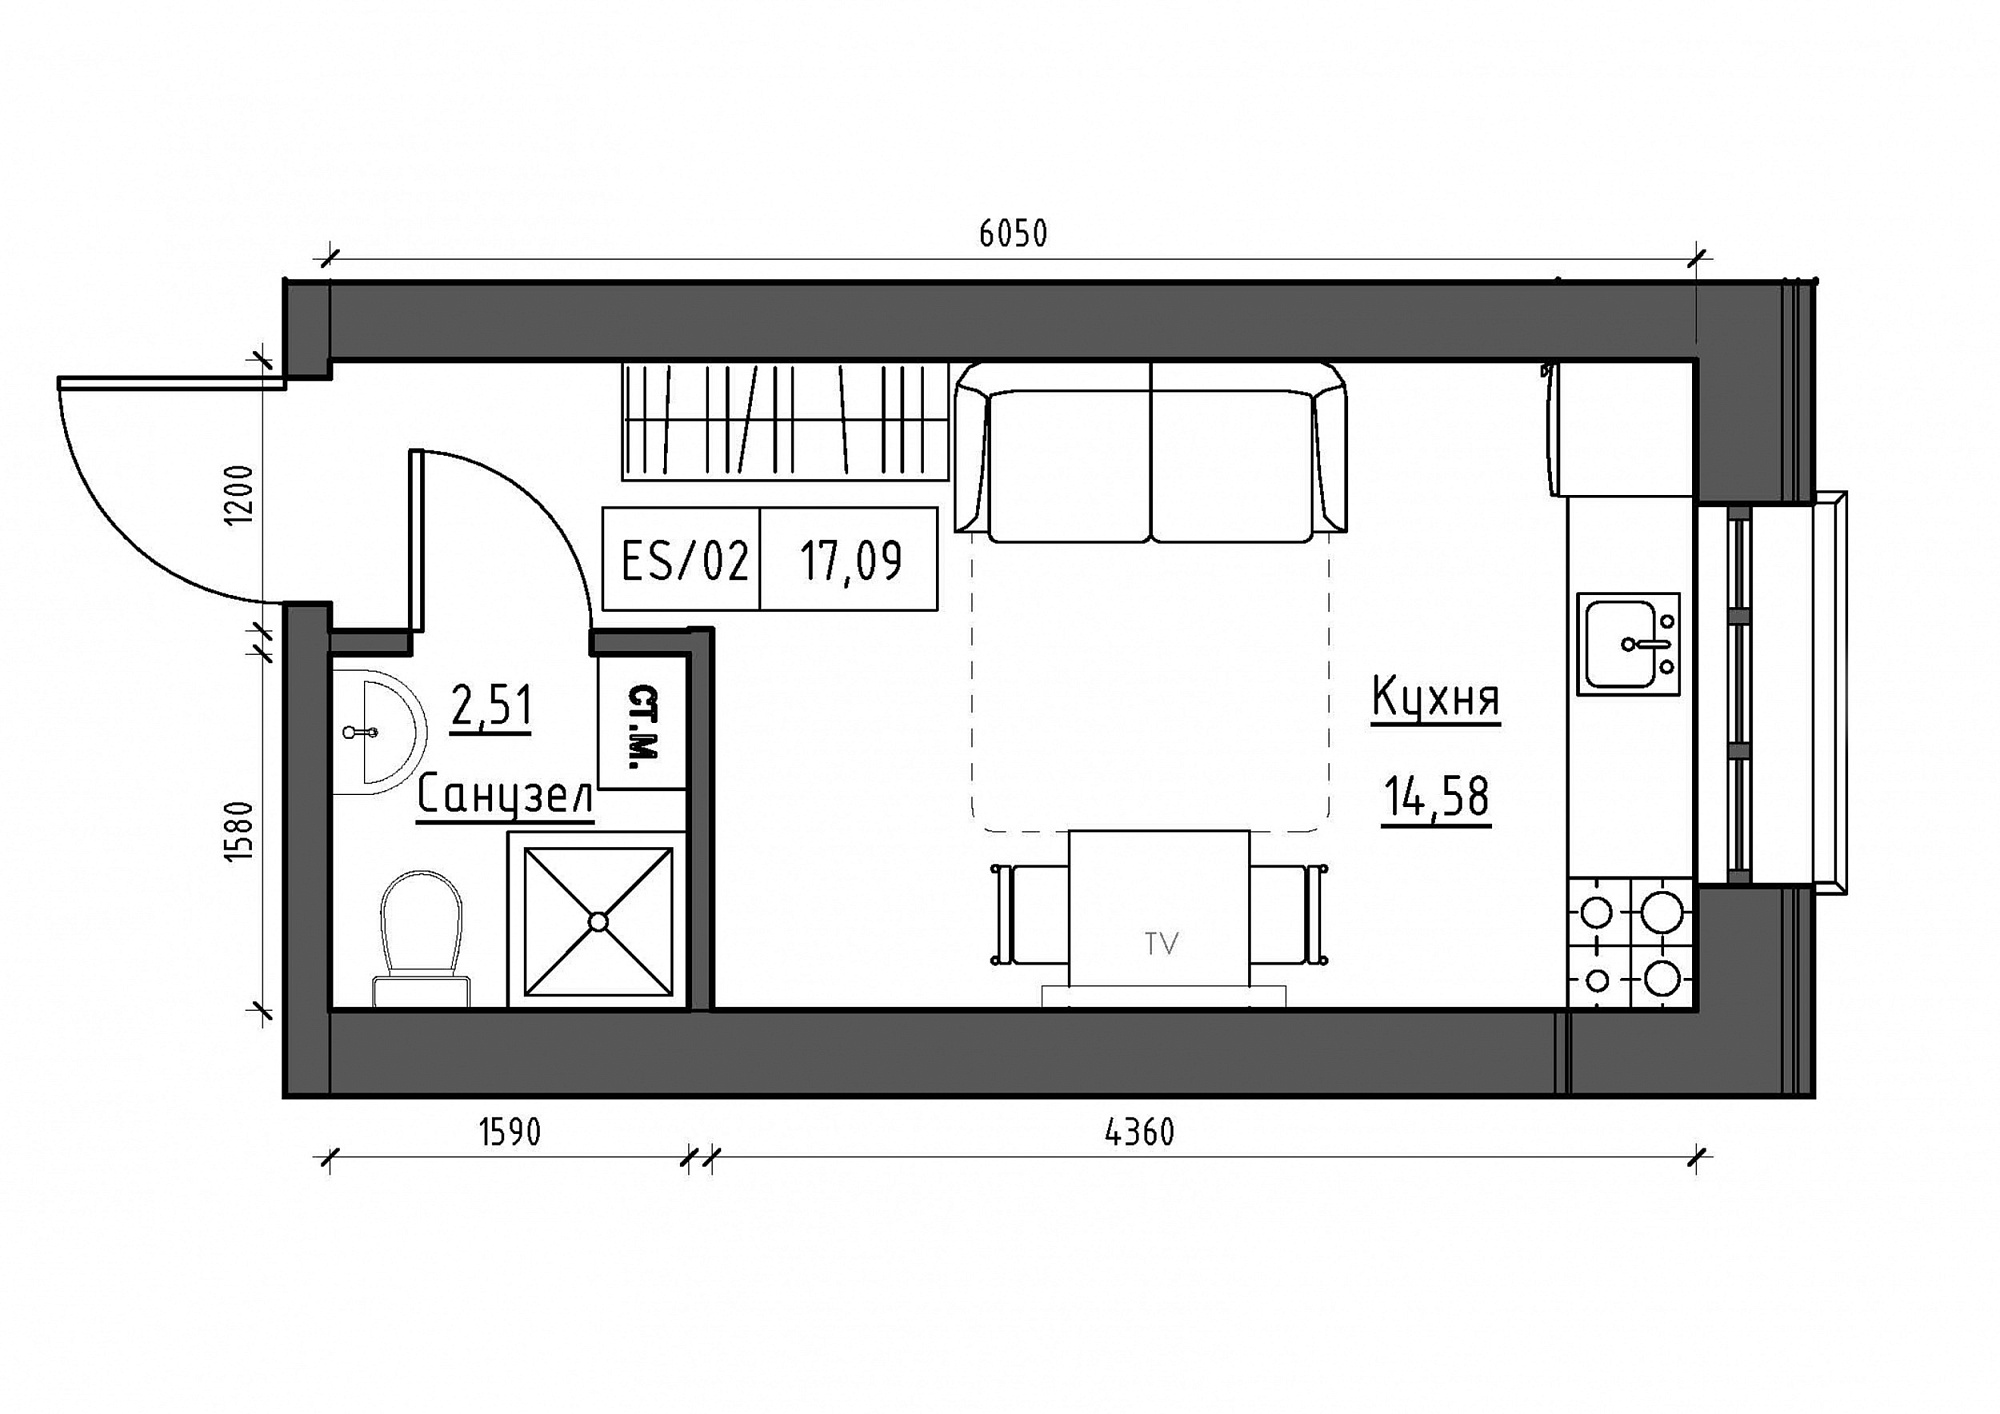 Планування Smart-квартира площею 17.09м2, KS-012-01/0014.